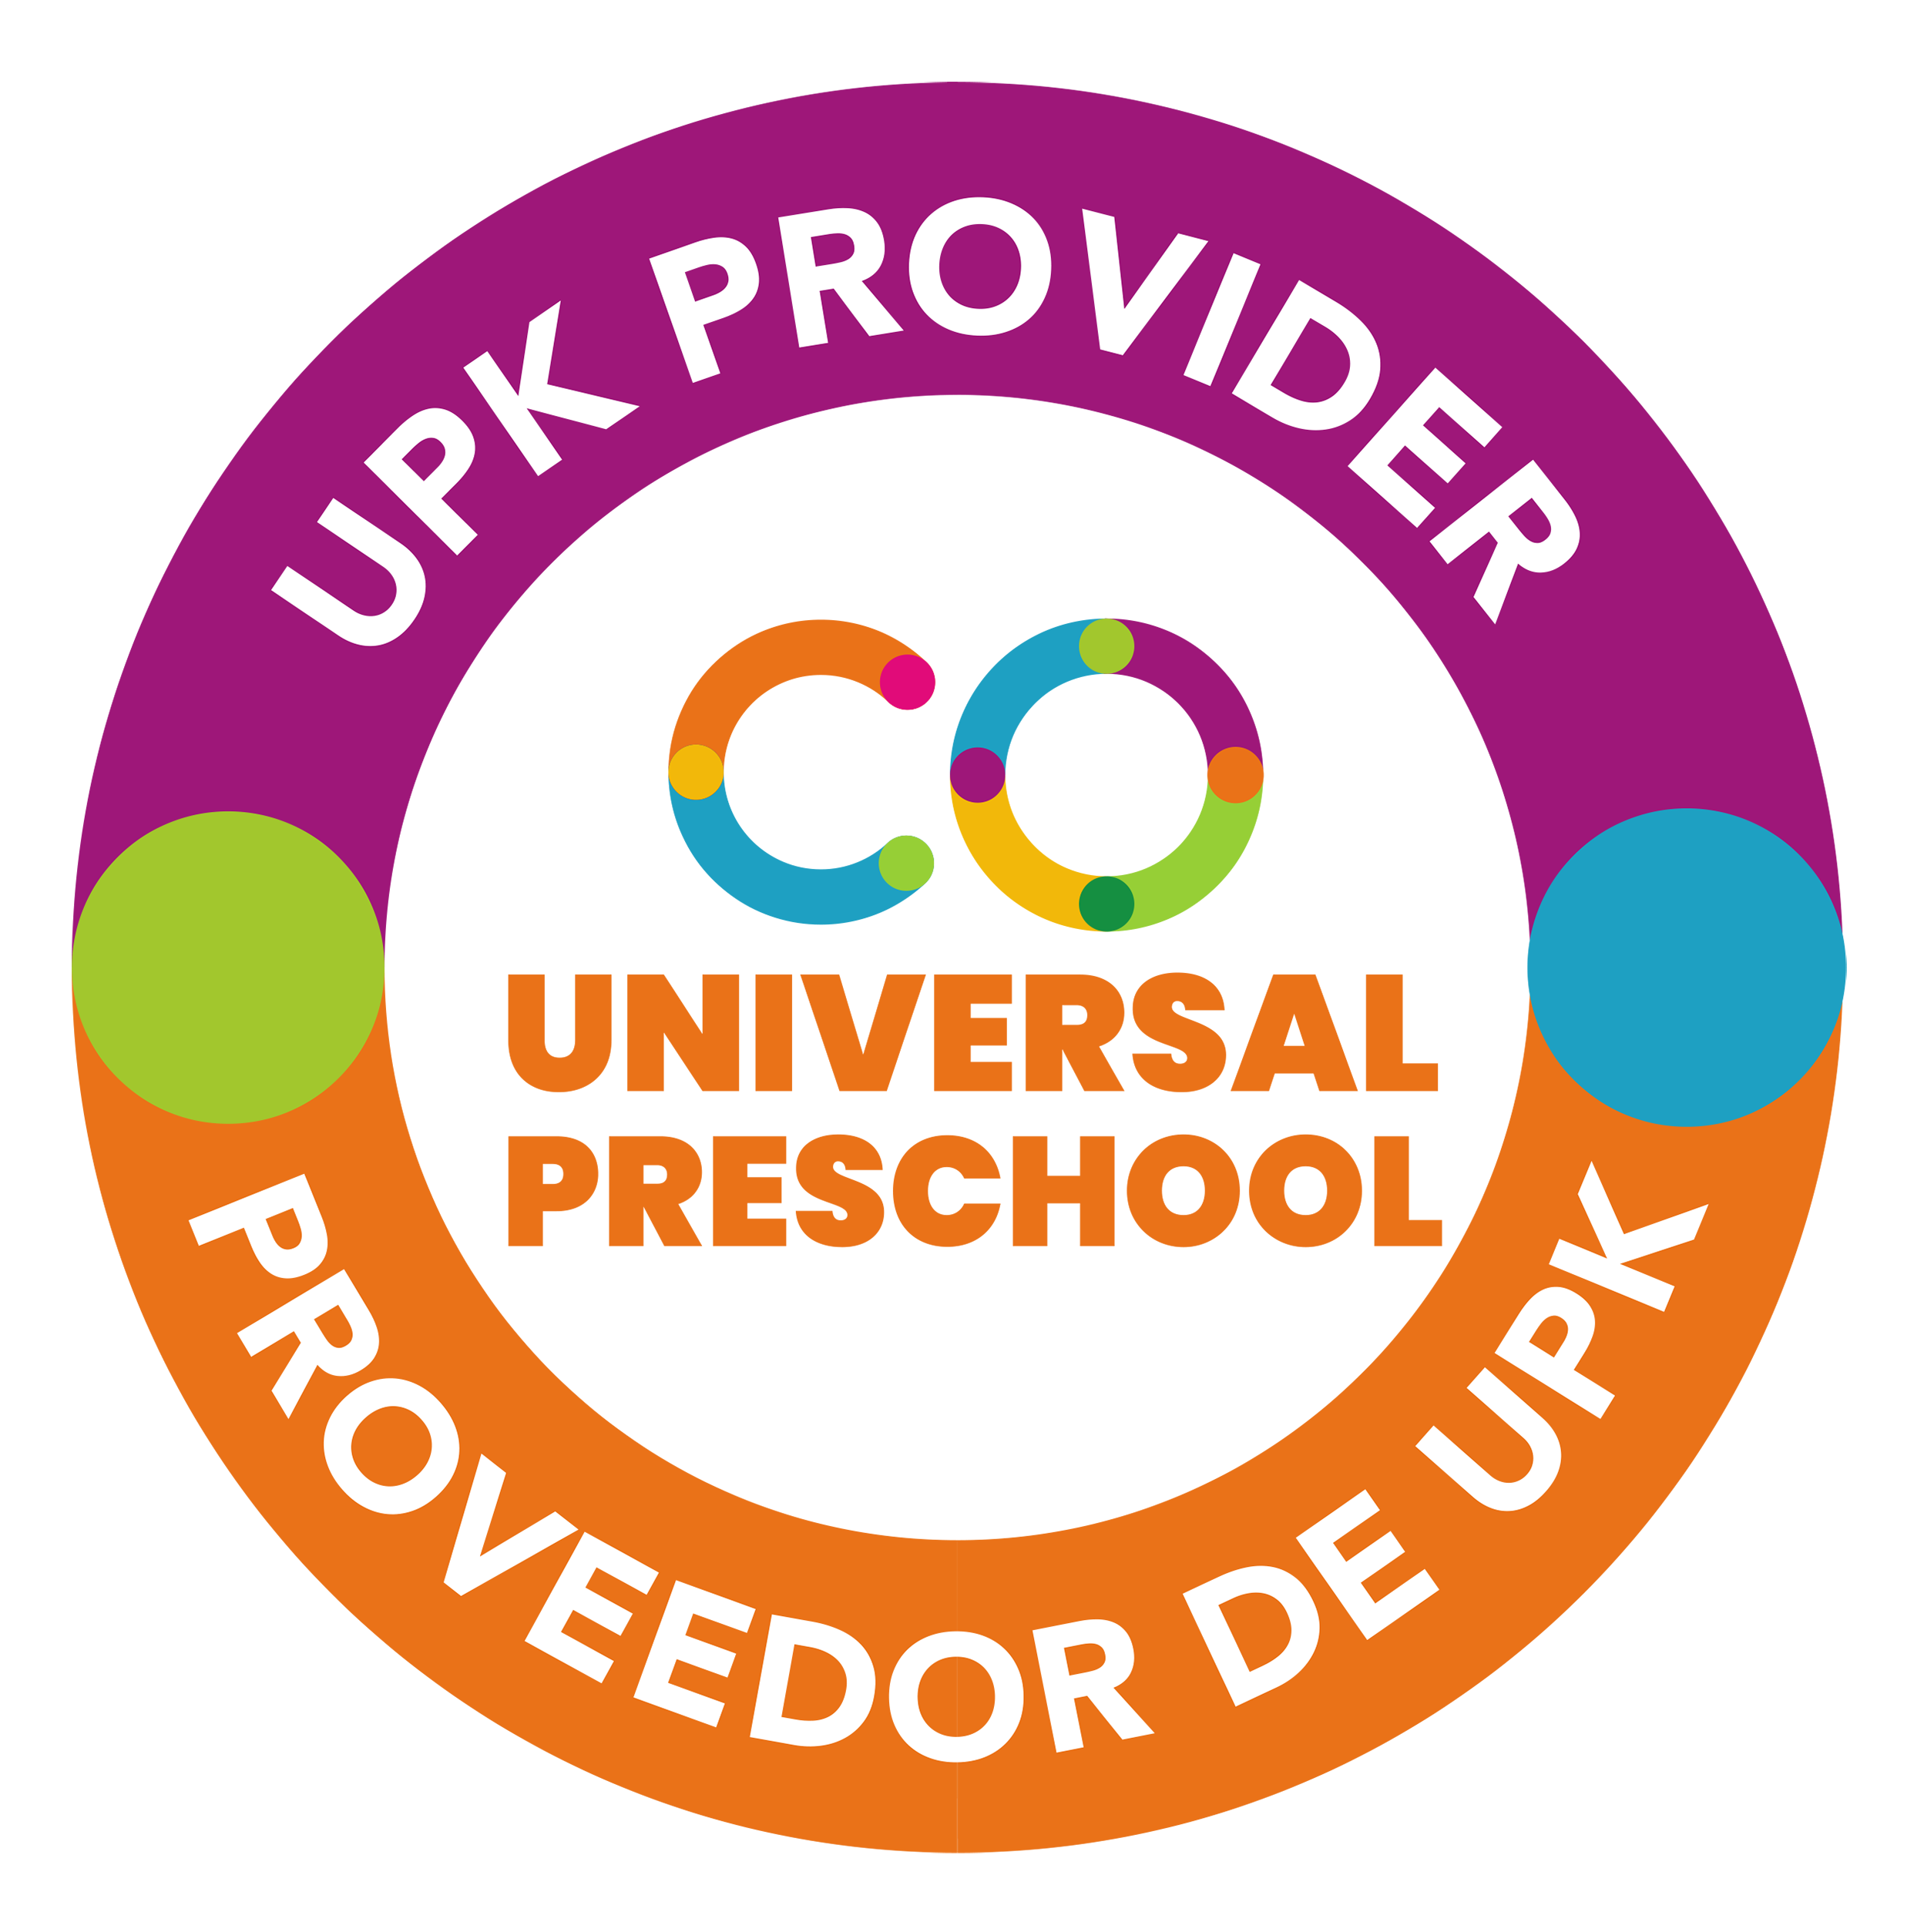 UPK Provider